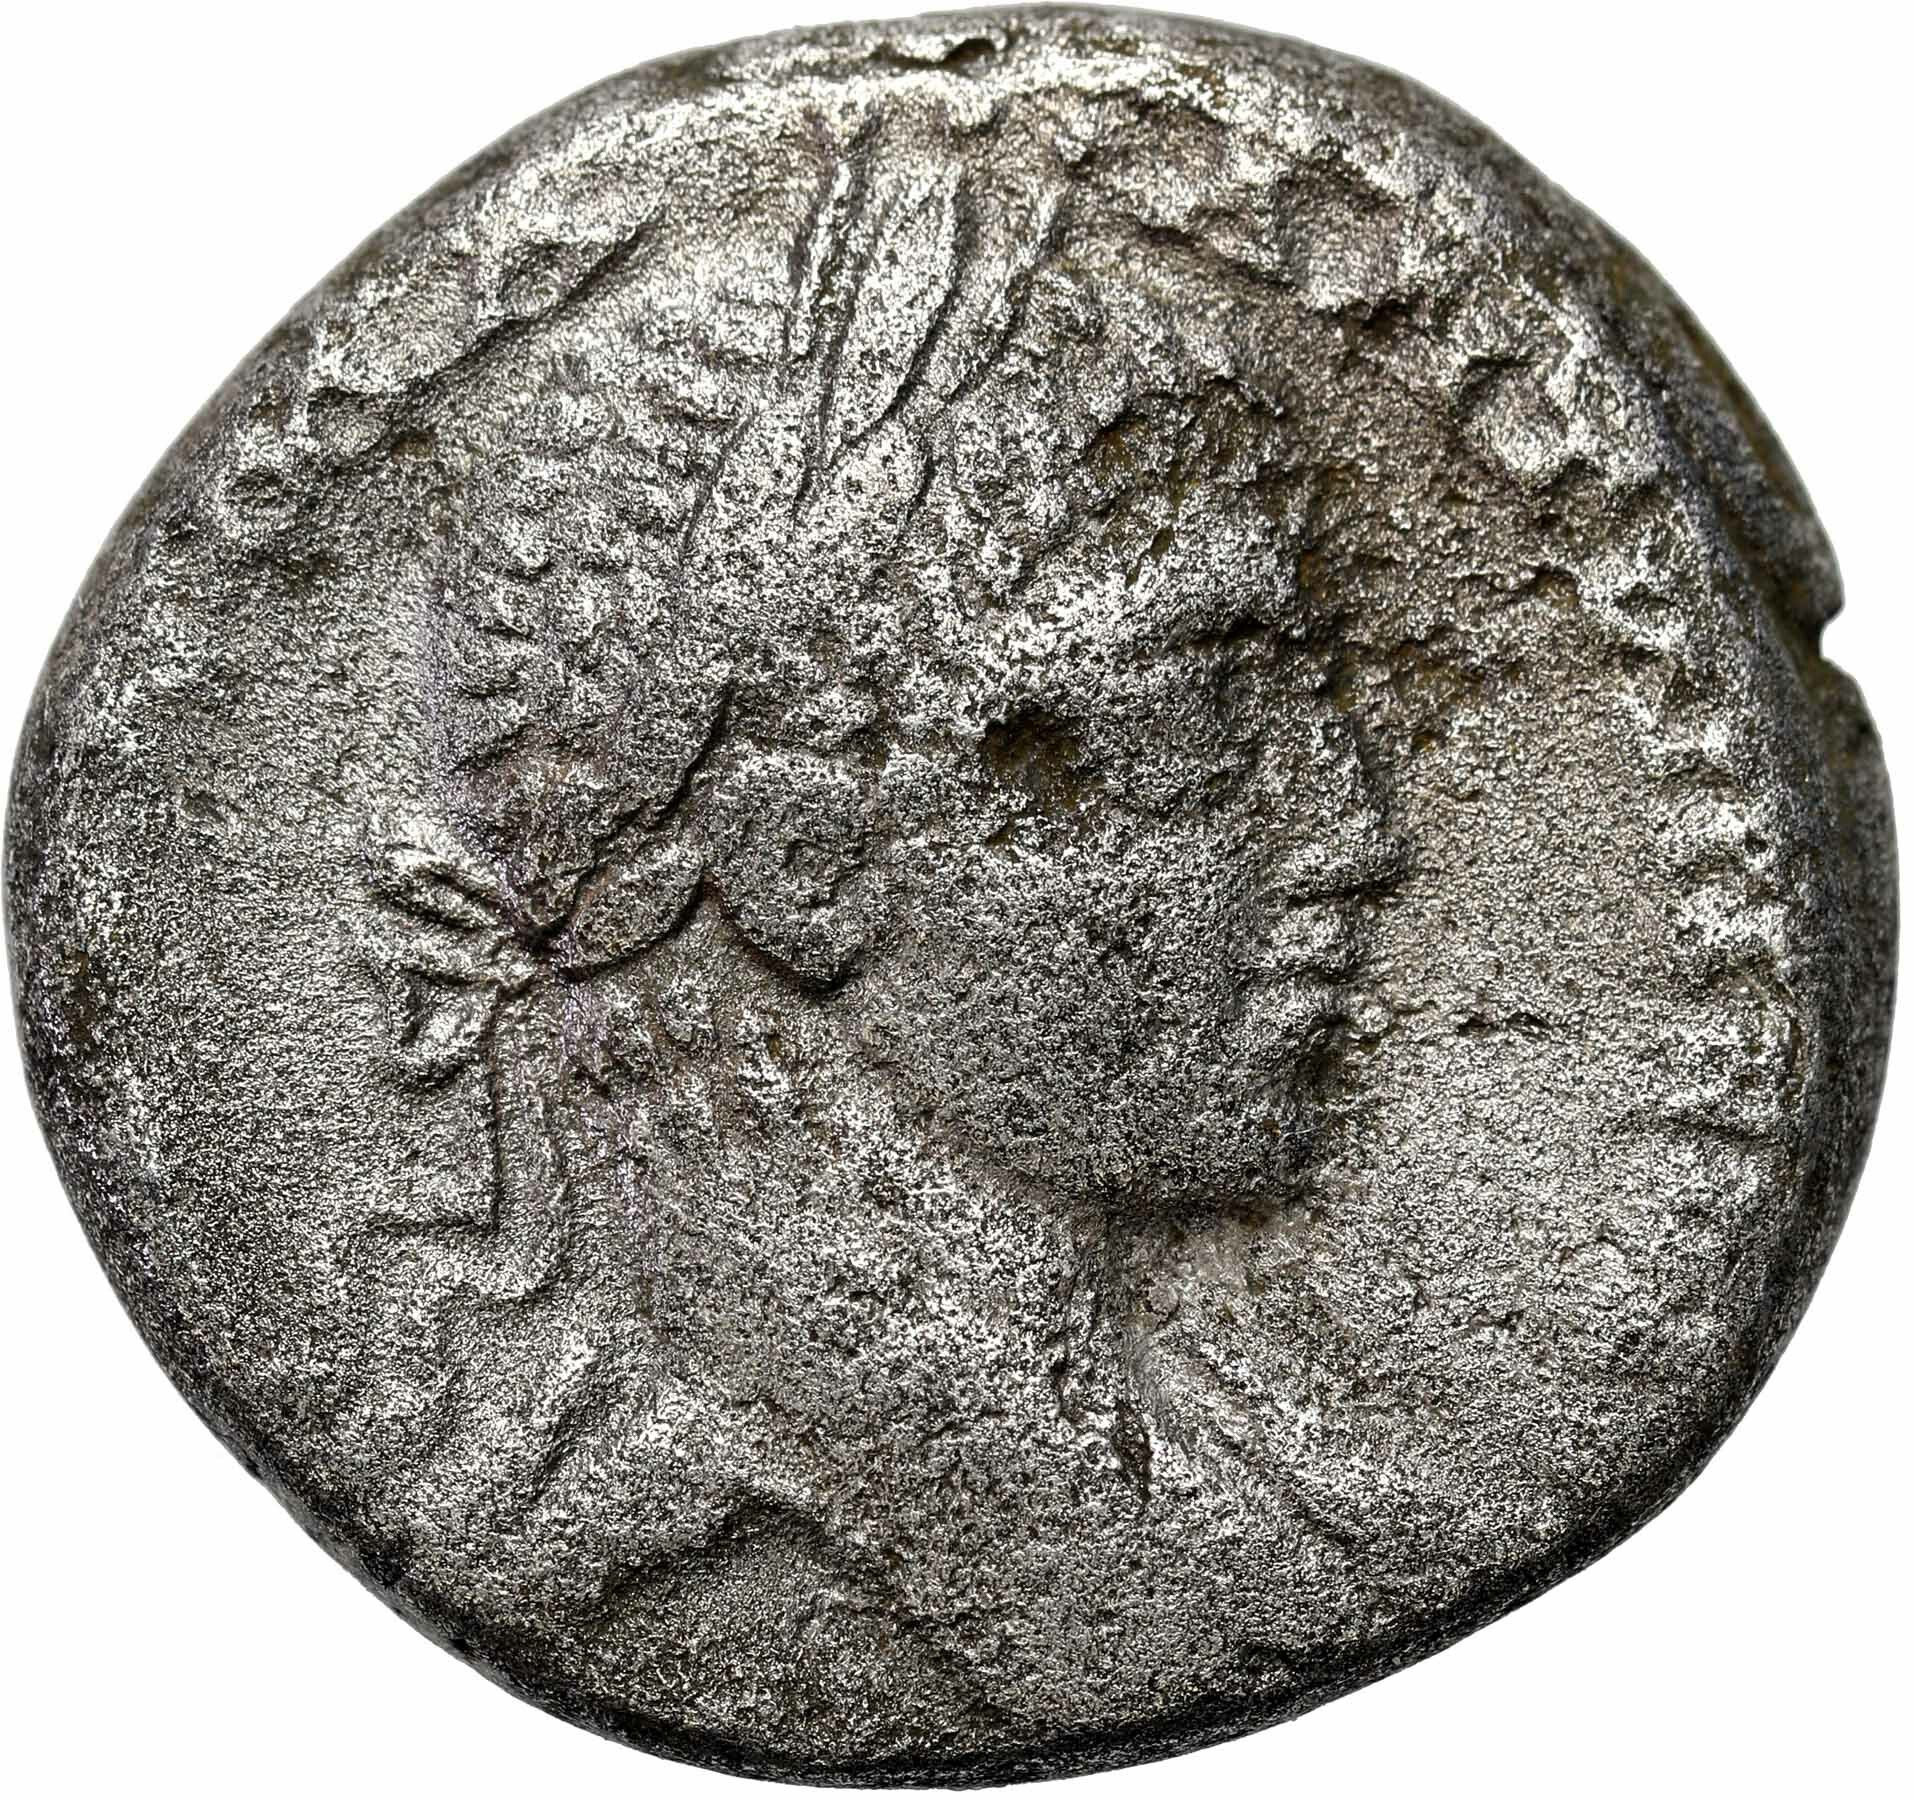 Rzym prowincjonalny,Elagabalus (218-222) Tetradrachma Syria, Antiochia 